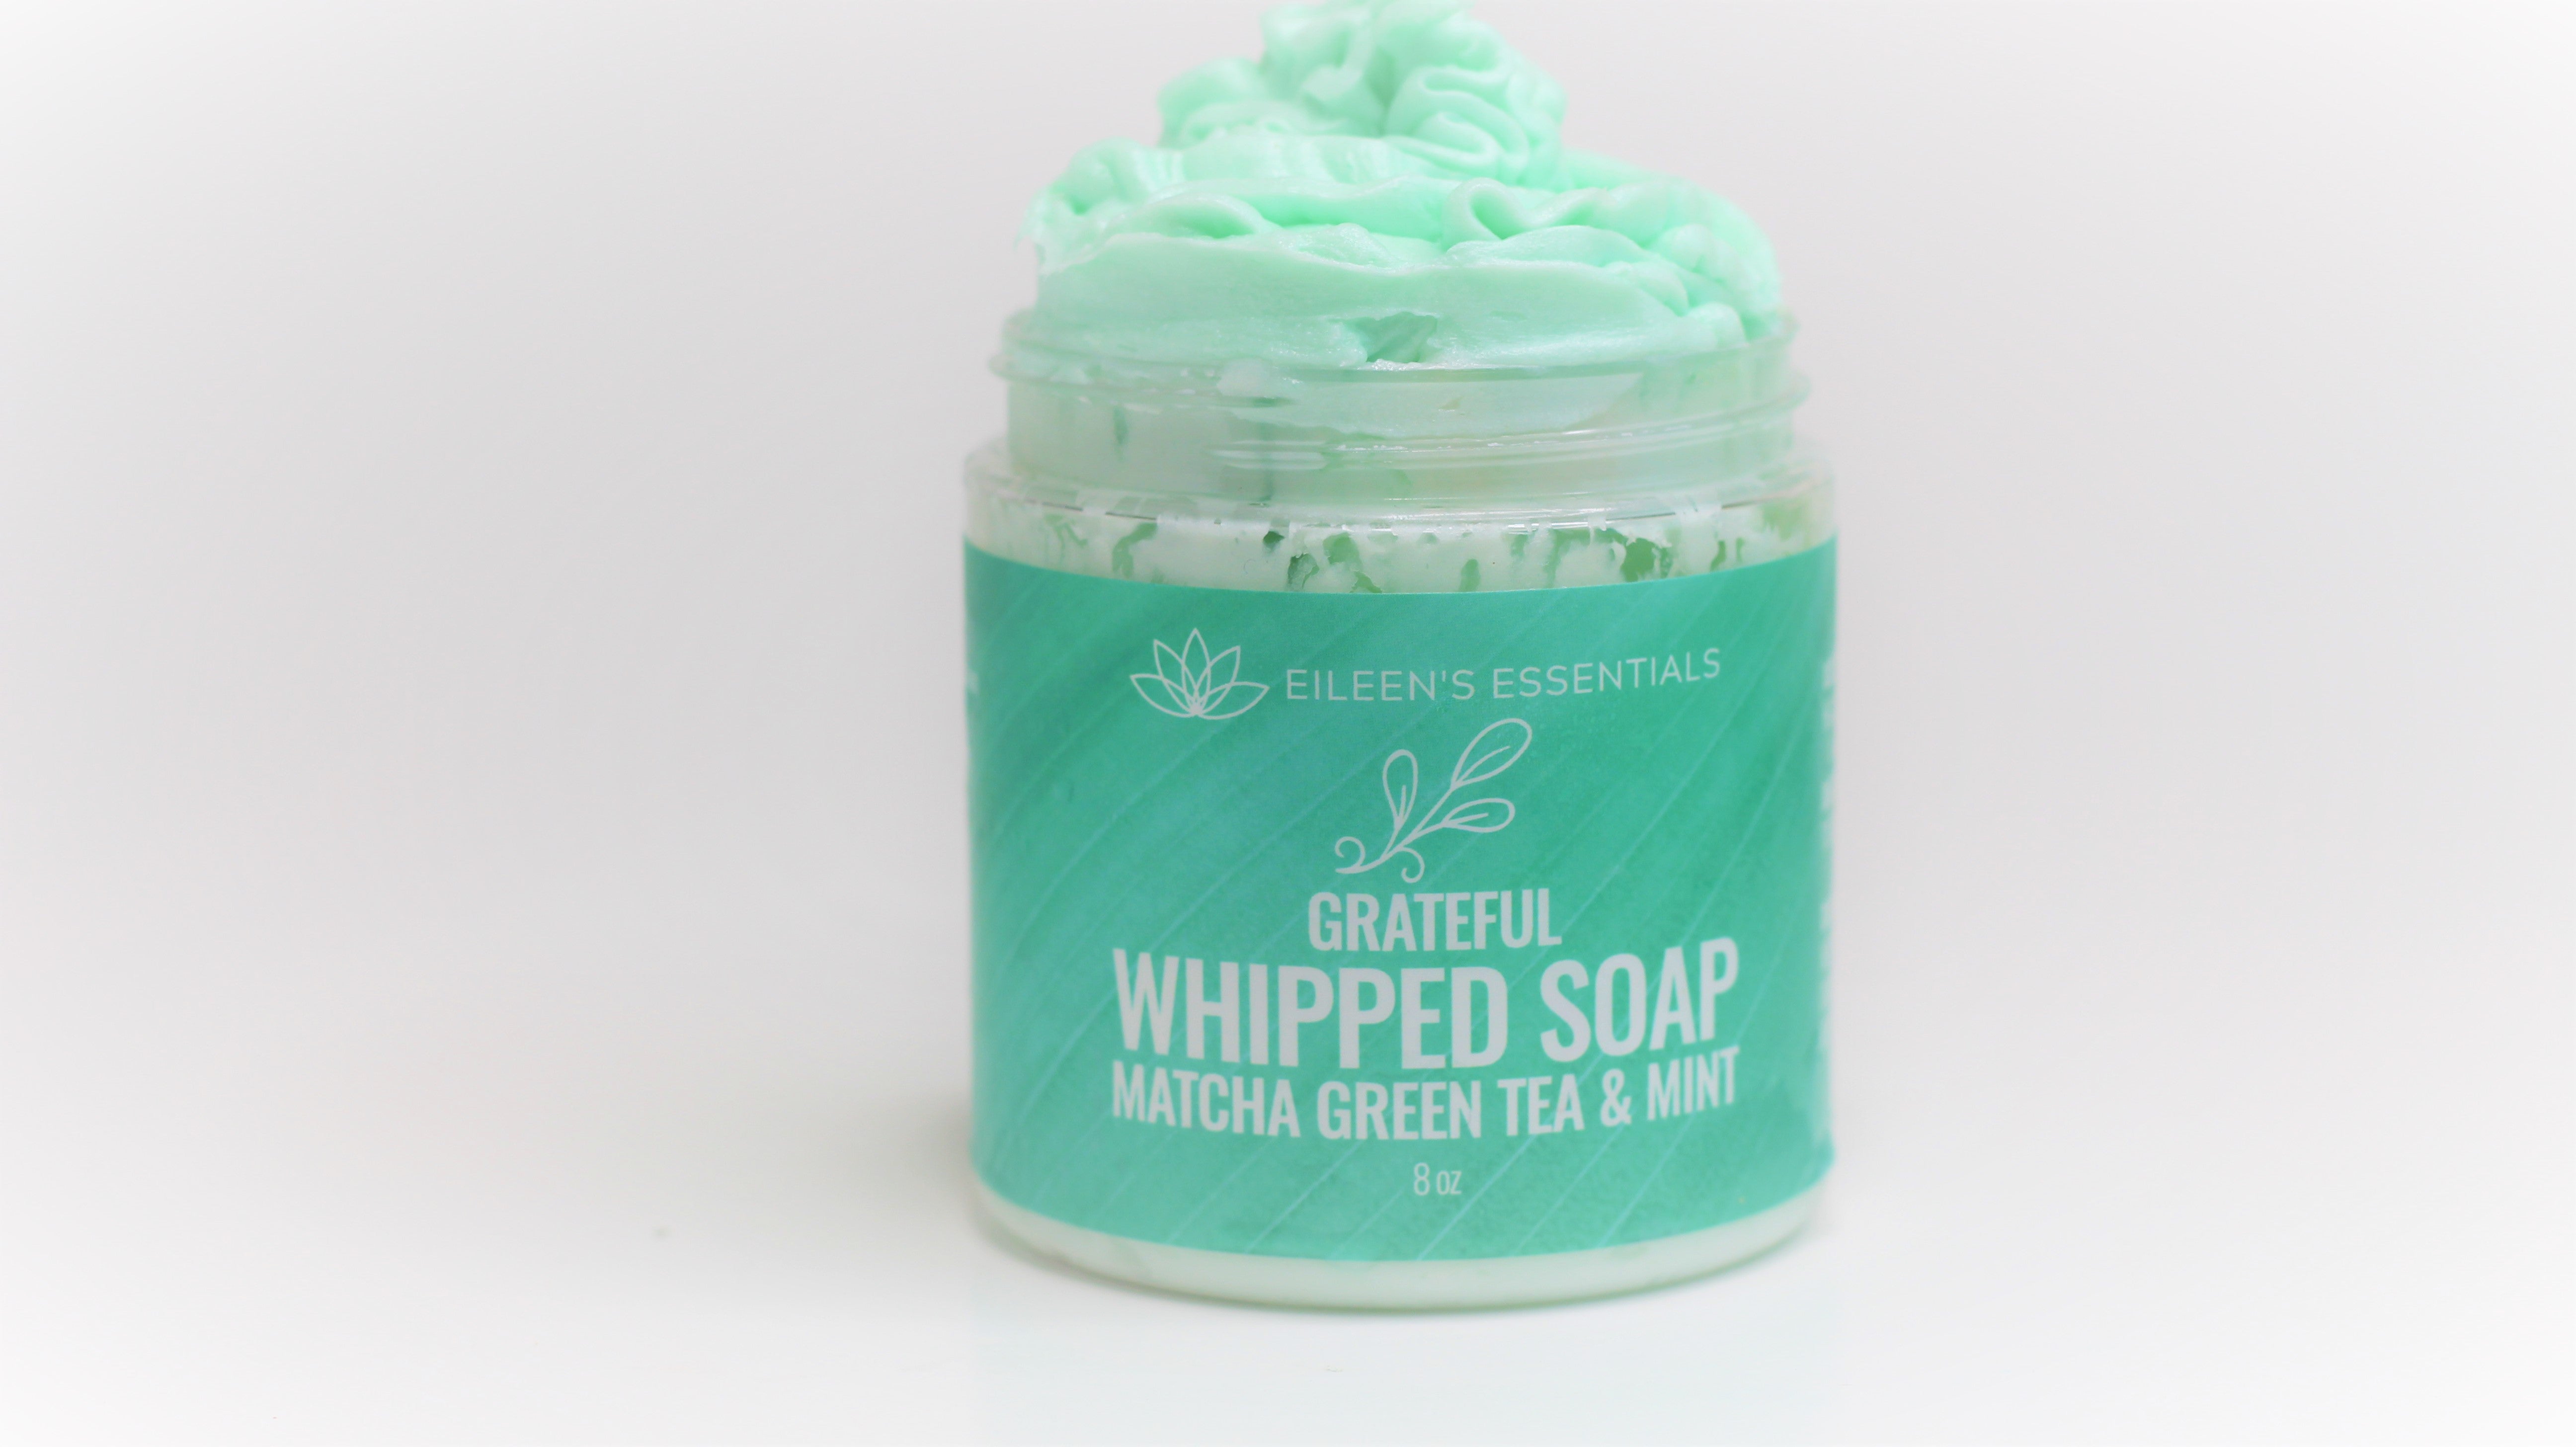 Whipped Soap; GRATEFUL (Matcha Green Tea & Mint)